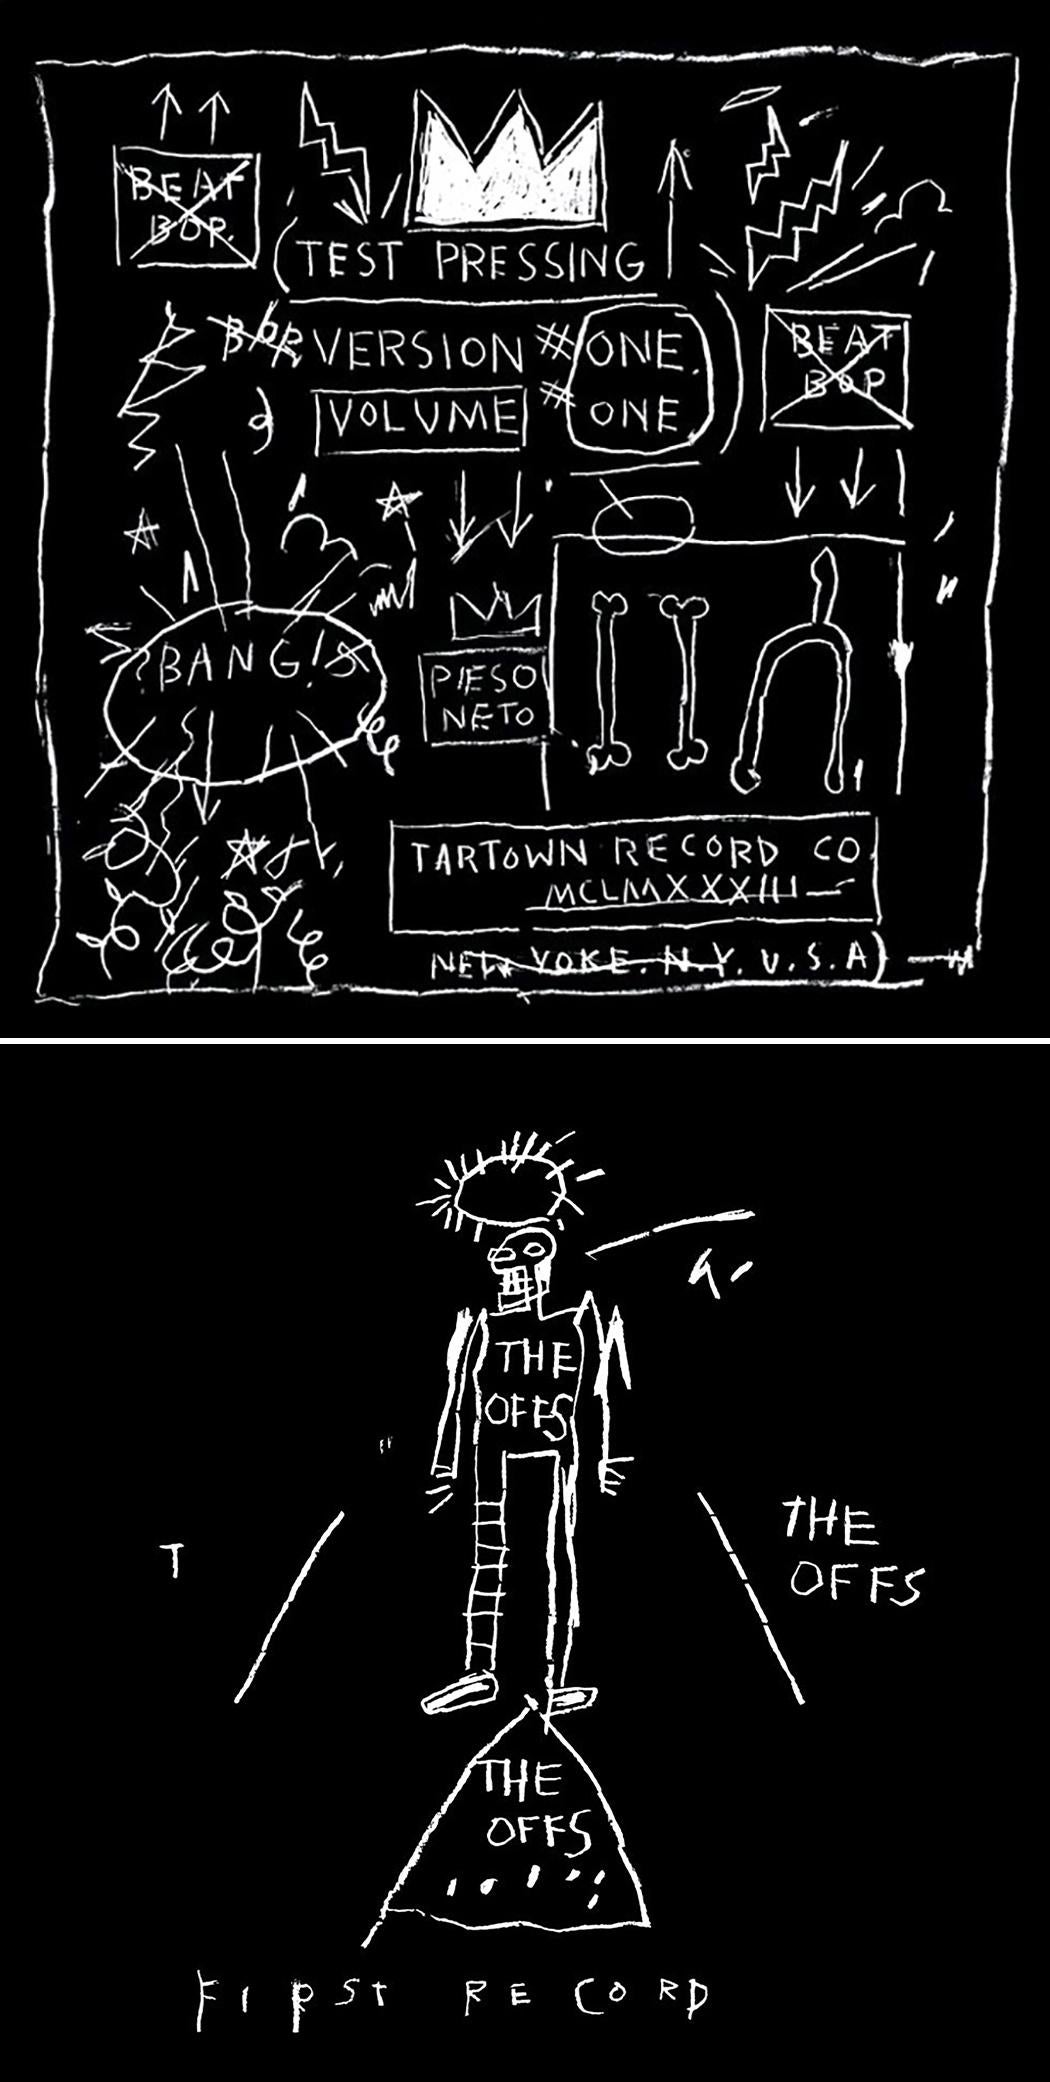 Basquiat Record Art (Basquiat The Offs Basquiat Beat Bop)  - Mixed Media Art by after Jean-Michel Basquiat